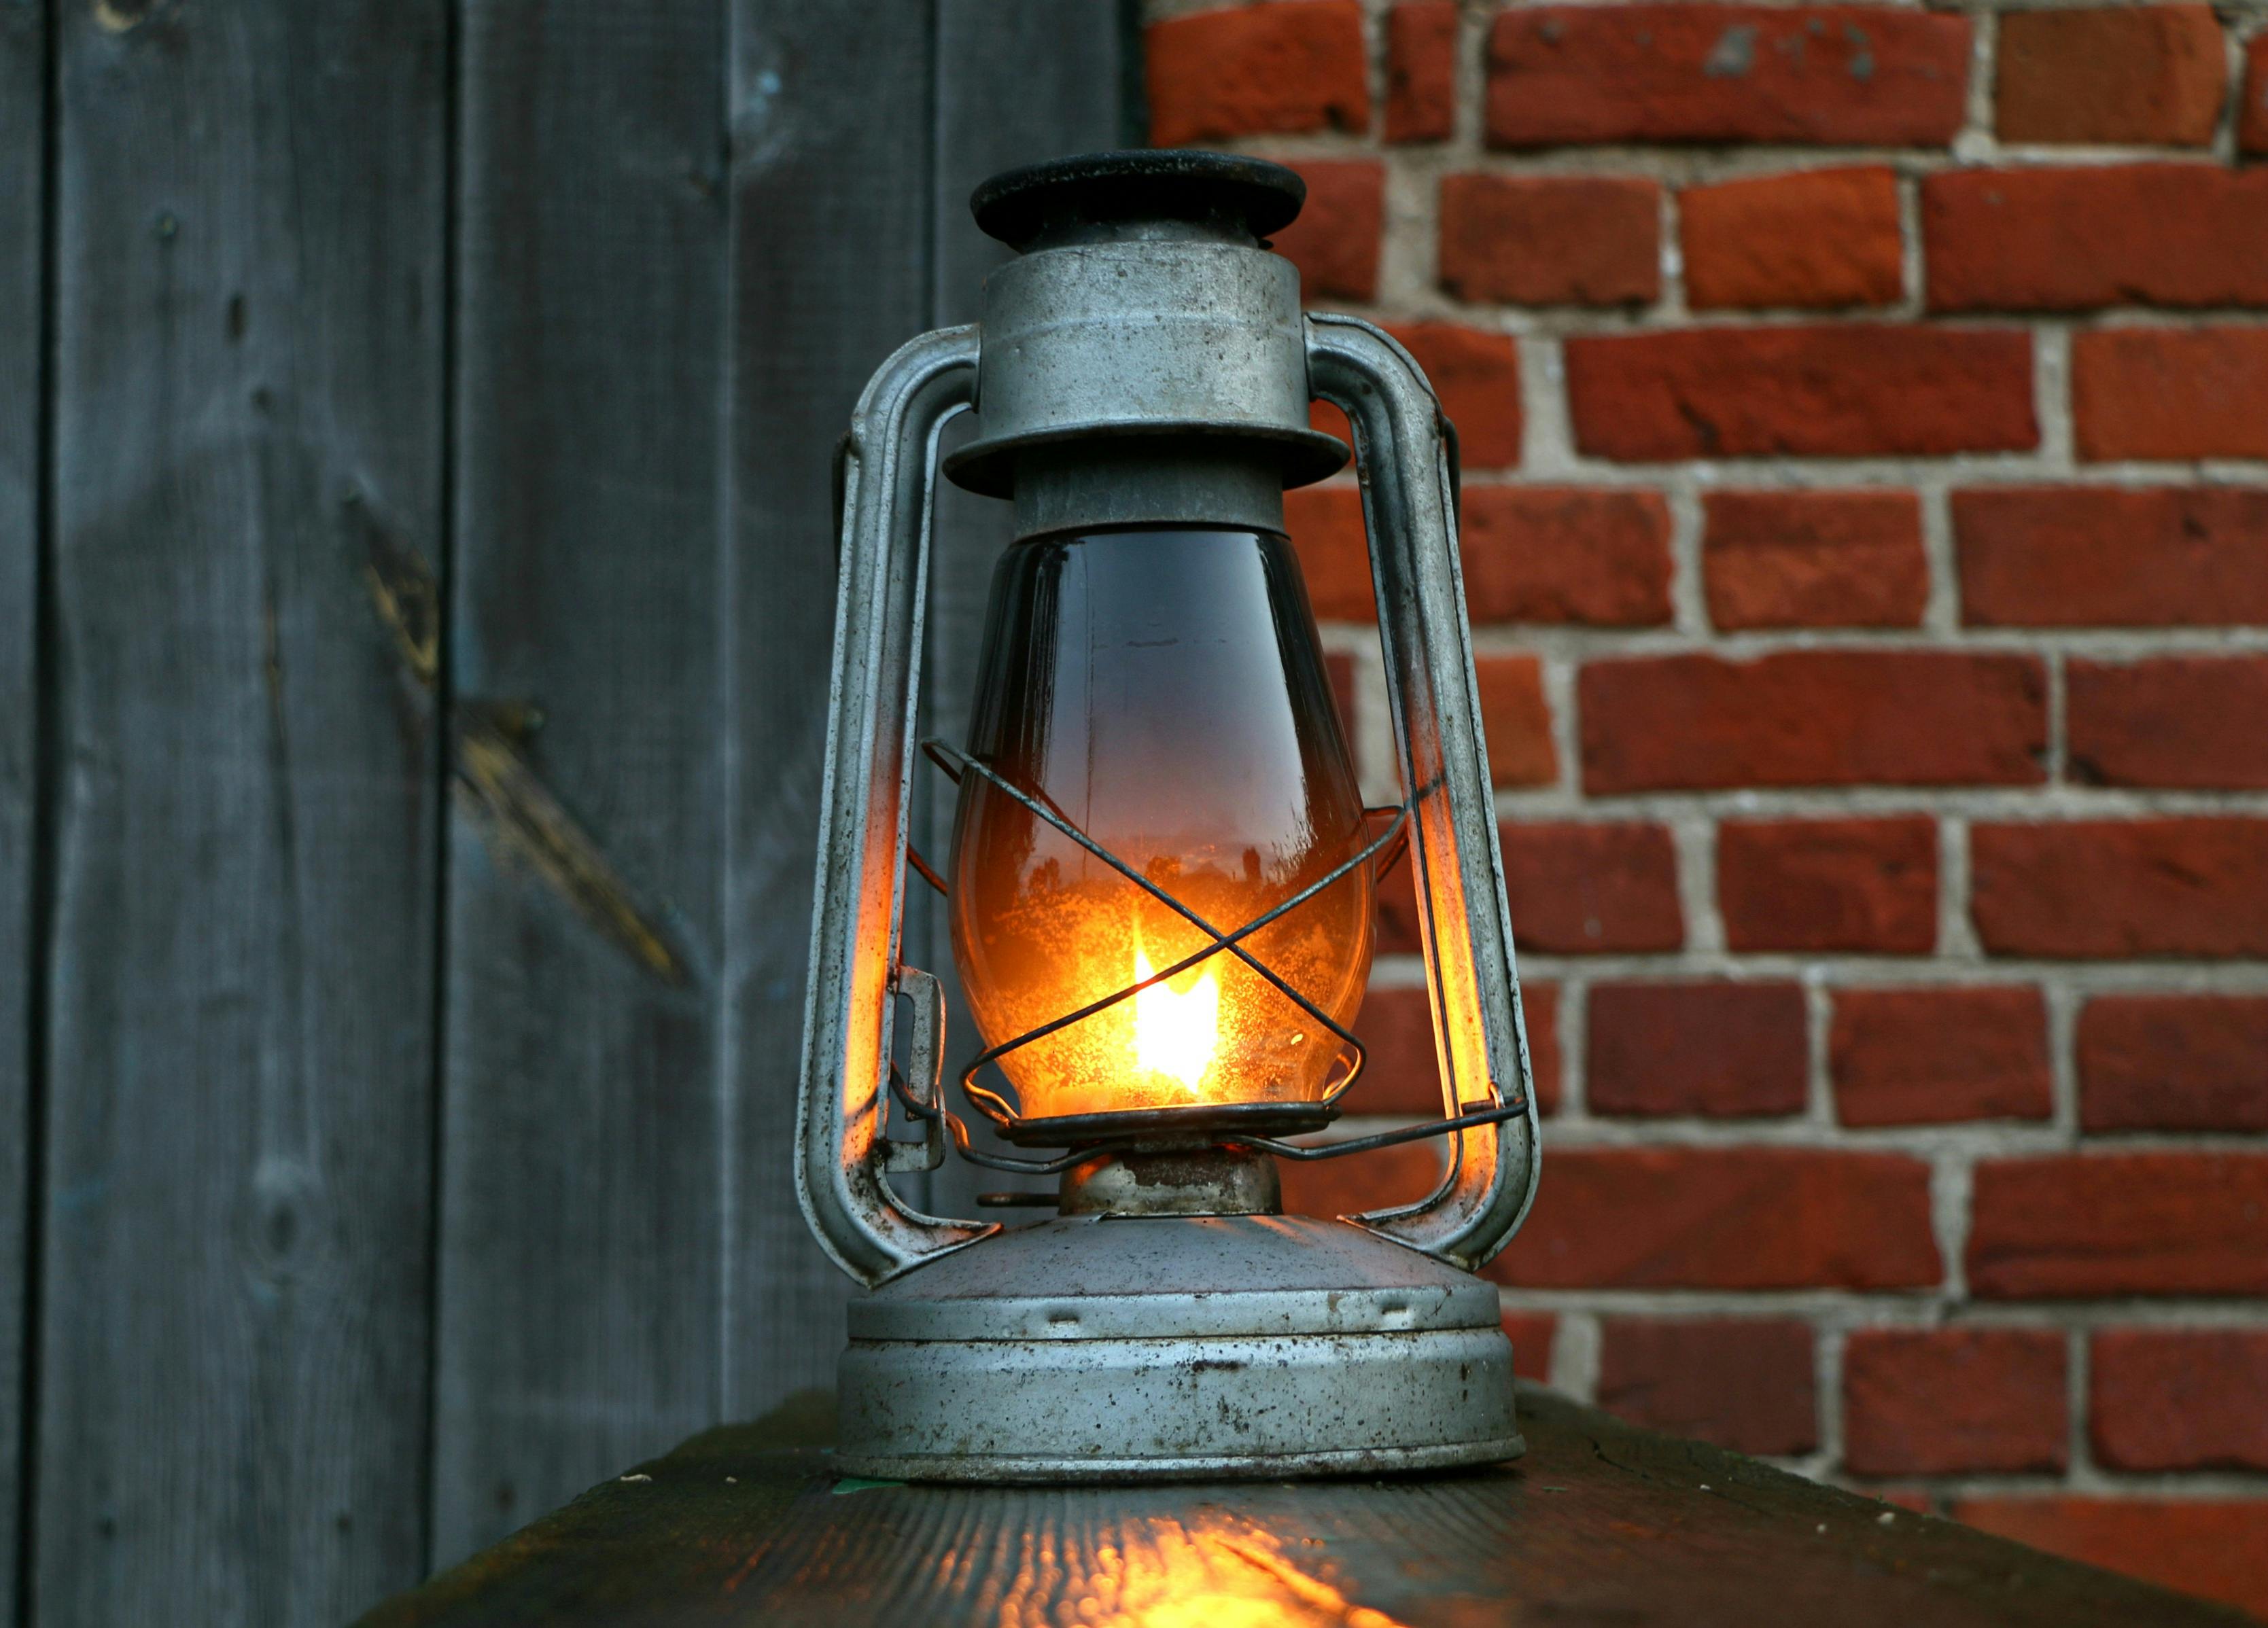 oil lamp flame